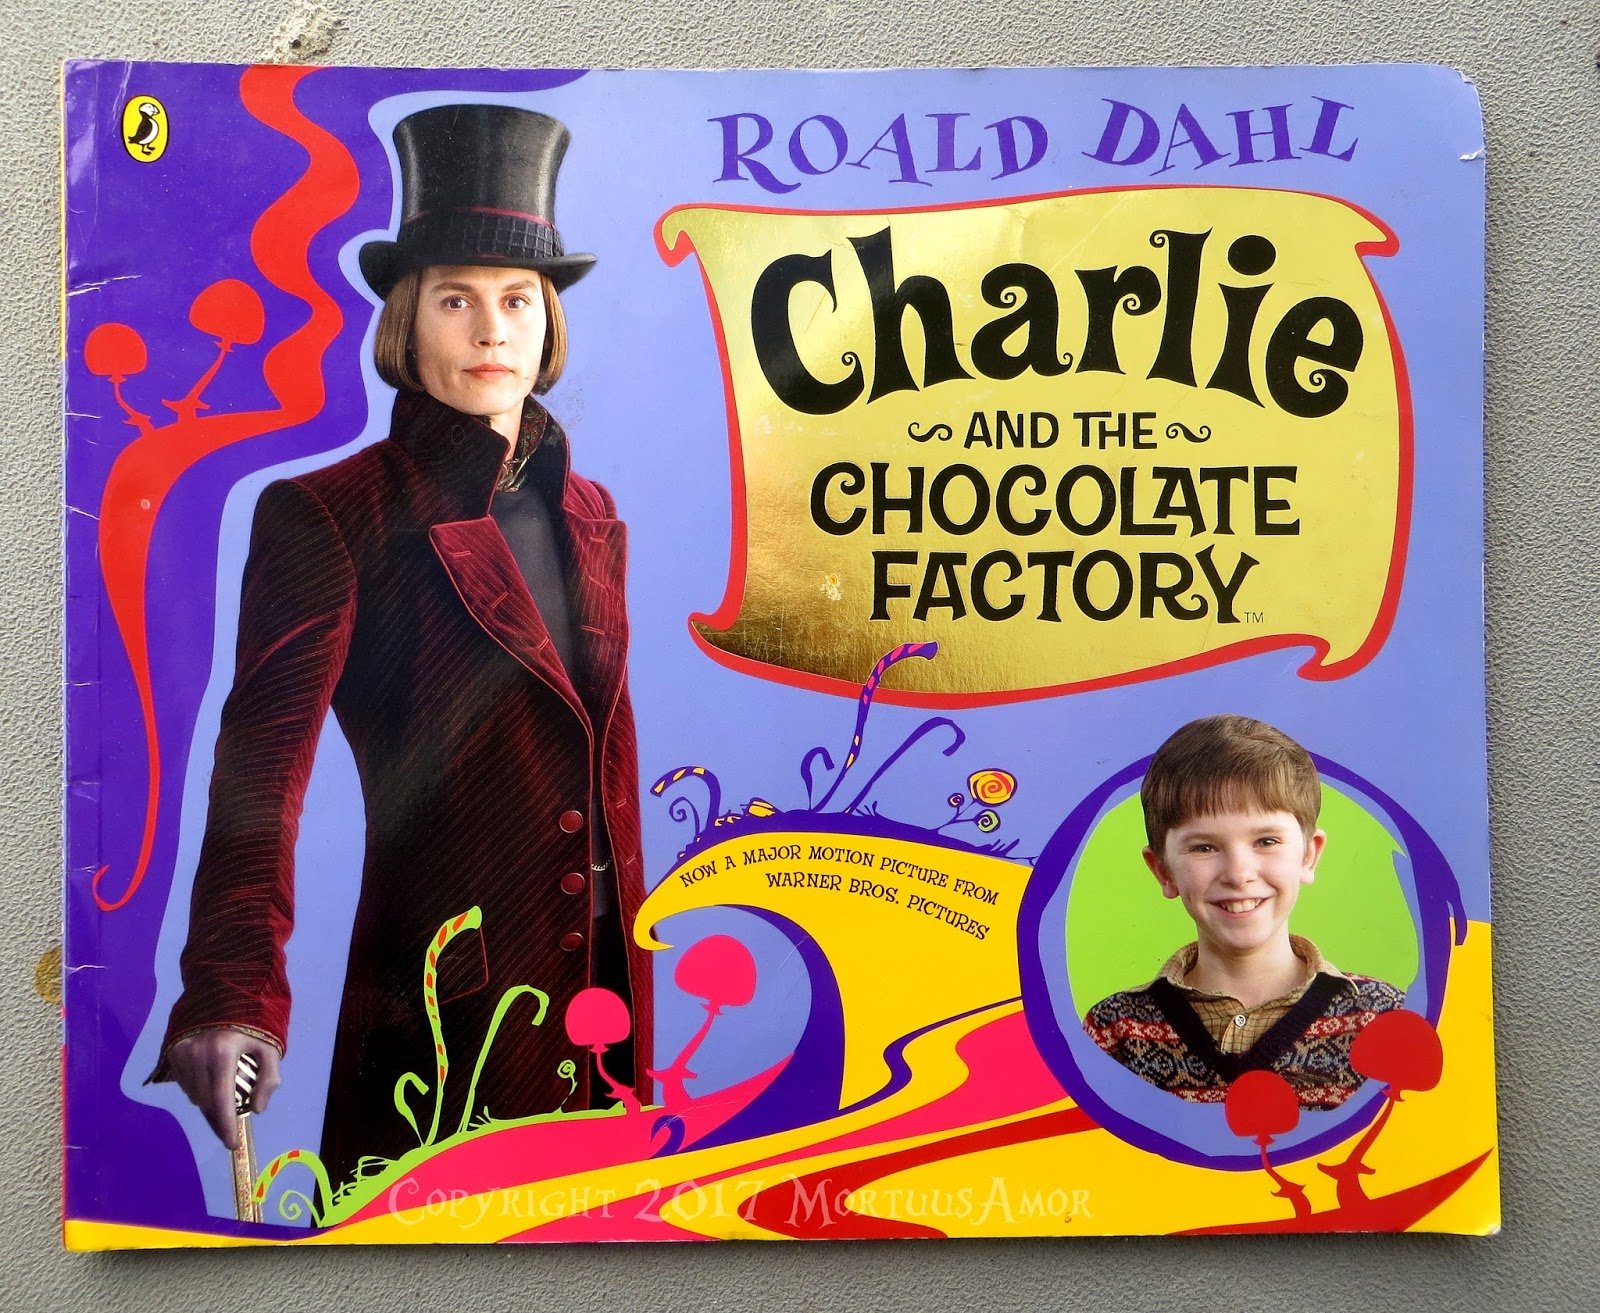 Шоколадная фабрика автор. Роальд даль Чарли и шоколадная фабрика. Чарли бакет и шоколадная фабрика. Roald Dahl Чарли и шоколадная фабрика. "Charlie and the Chocolate Factory" Хелен Боне кртер.